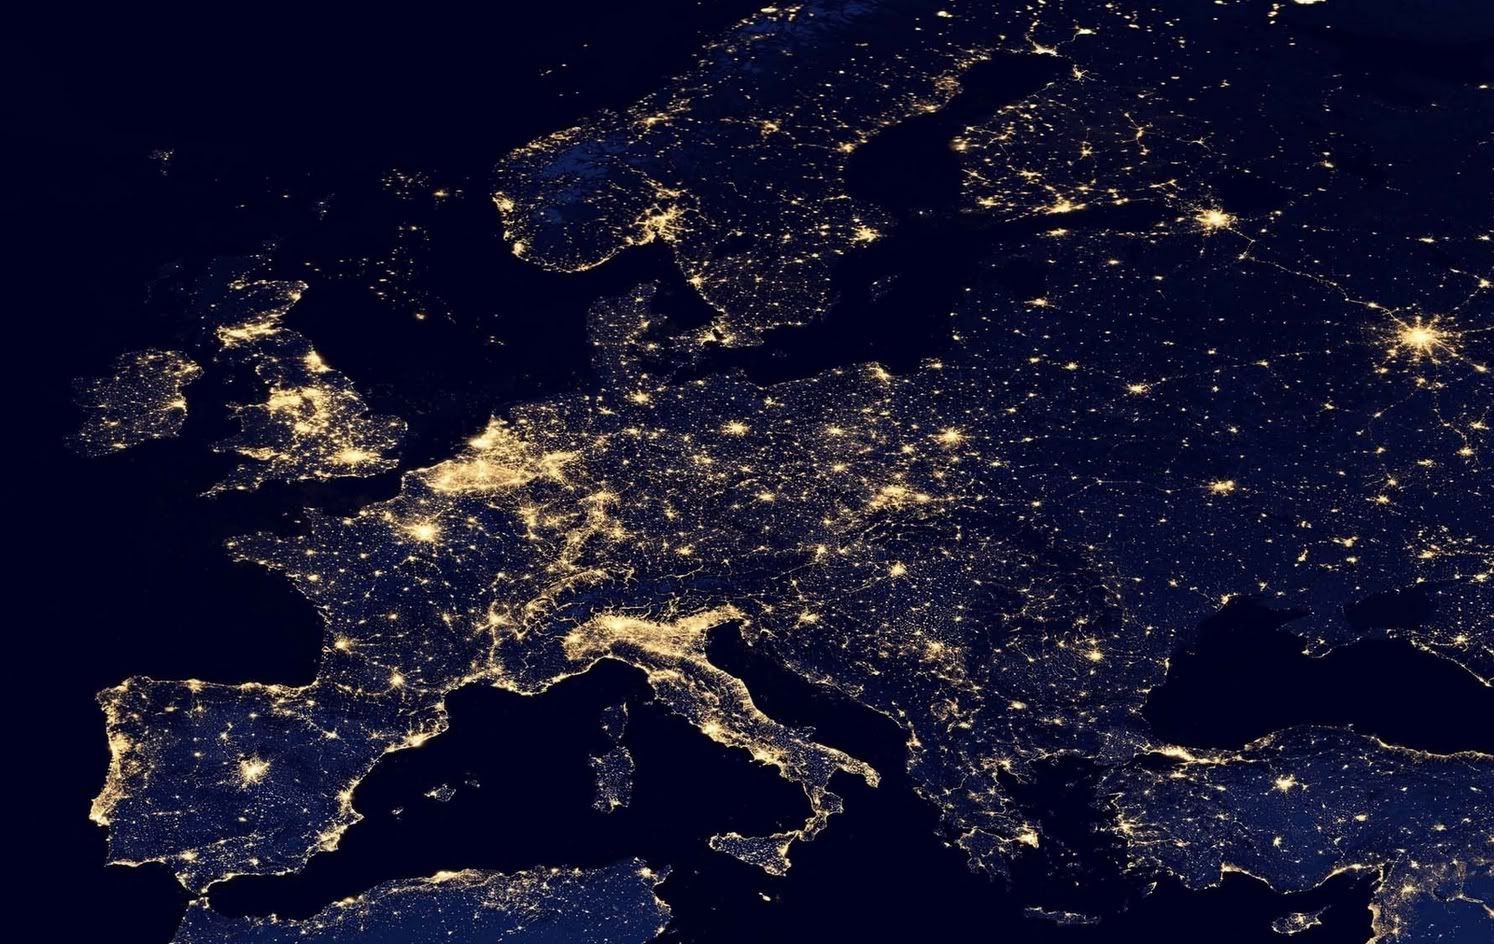 ESA musi opisać milion zdjęć zrobionych nocą z ISS